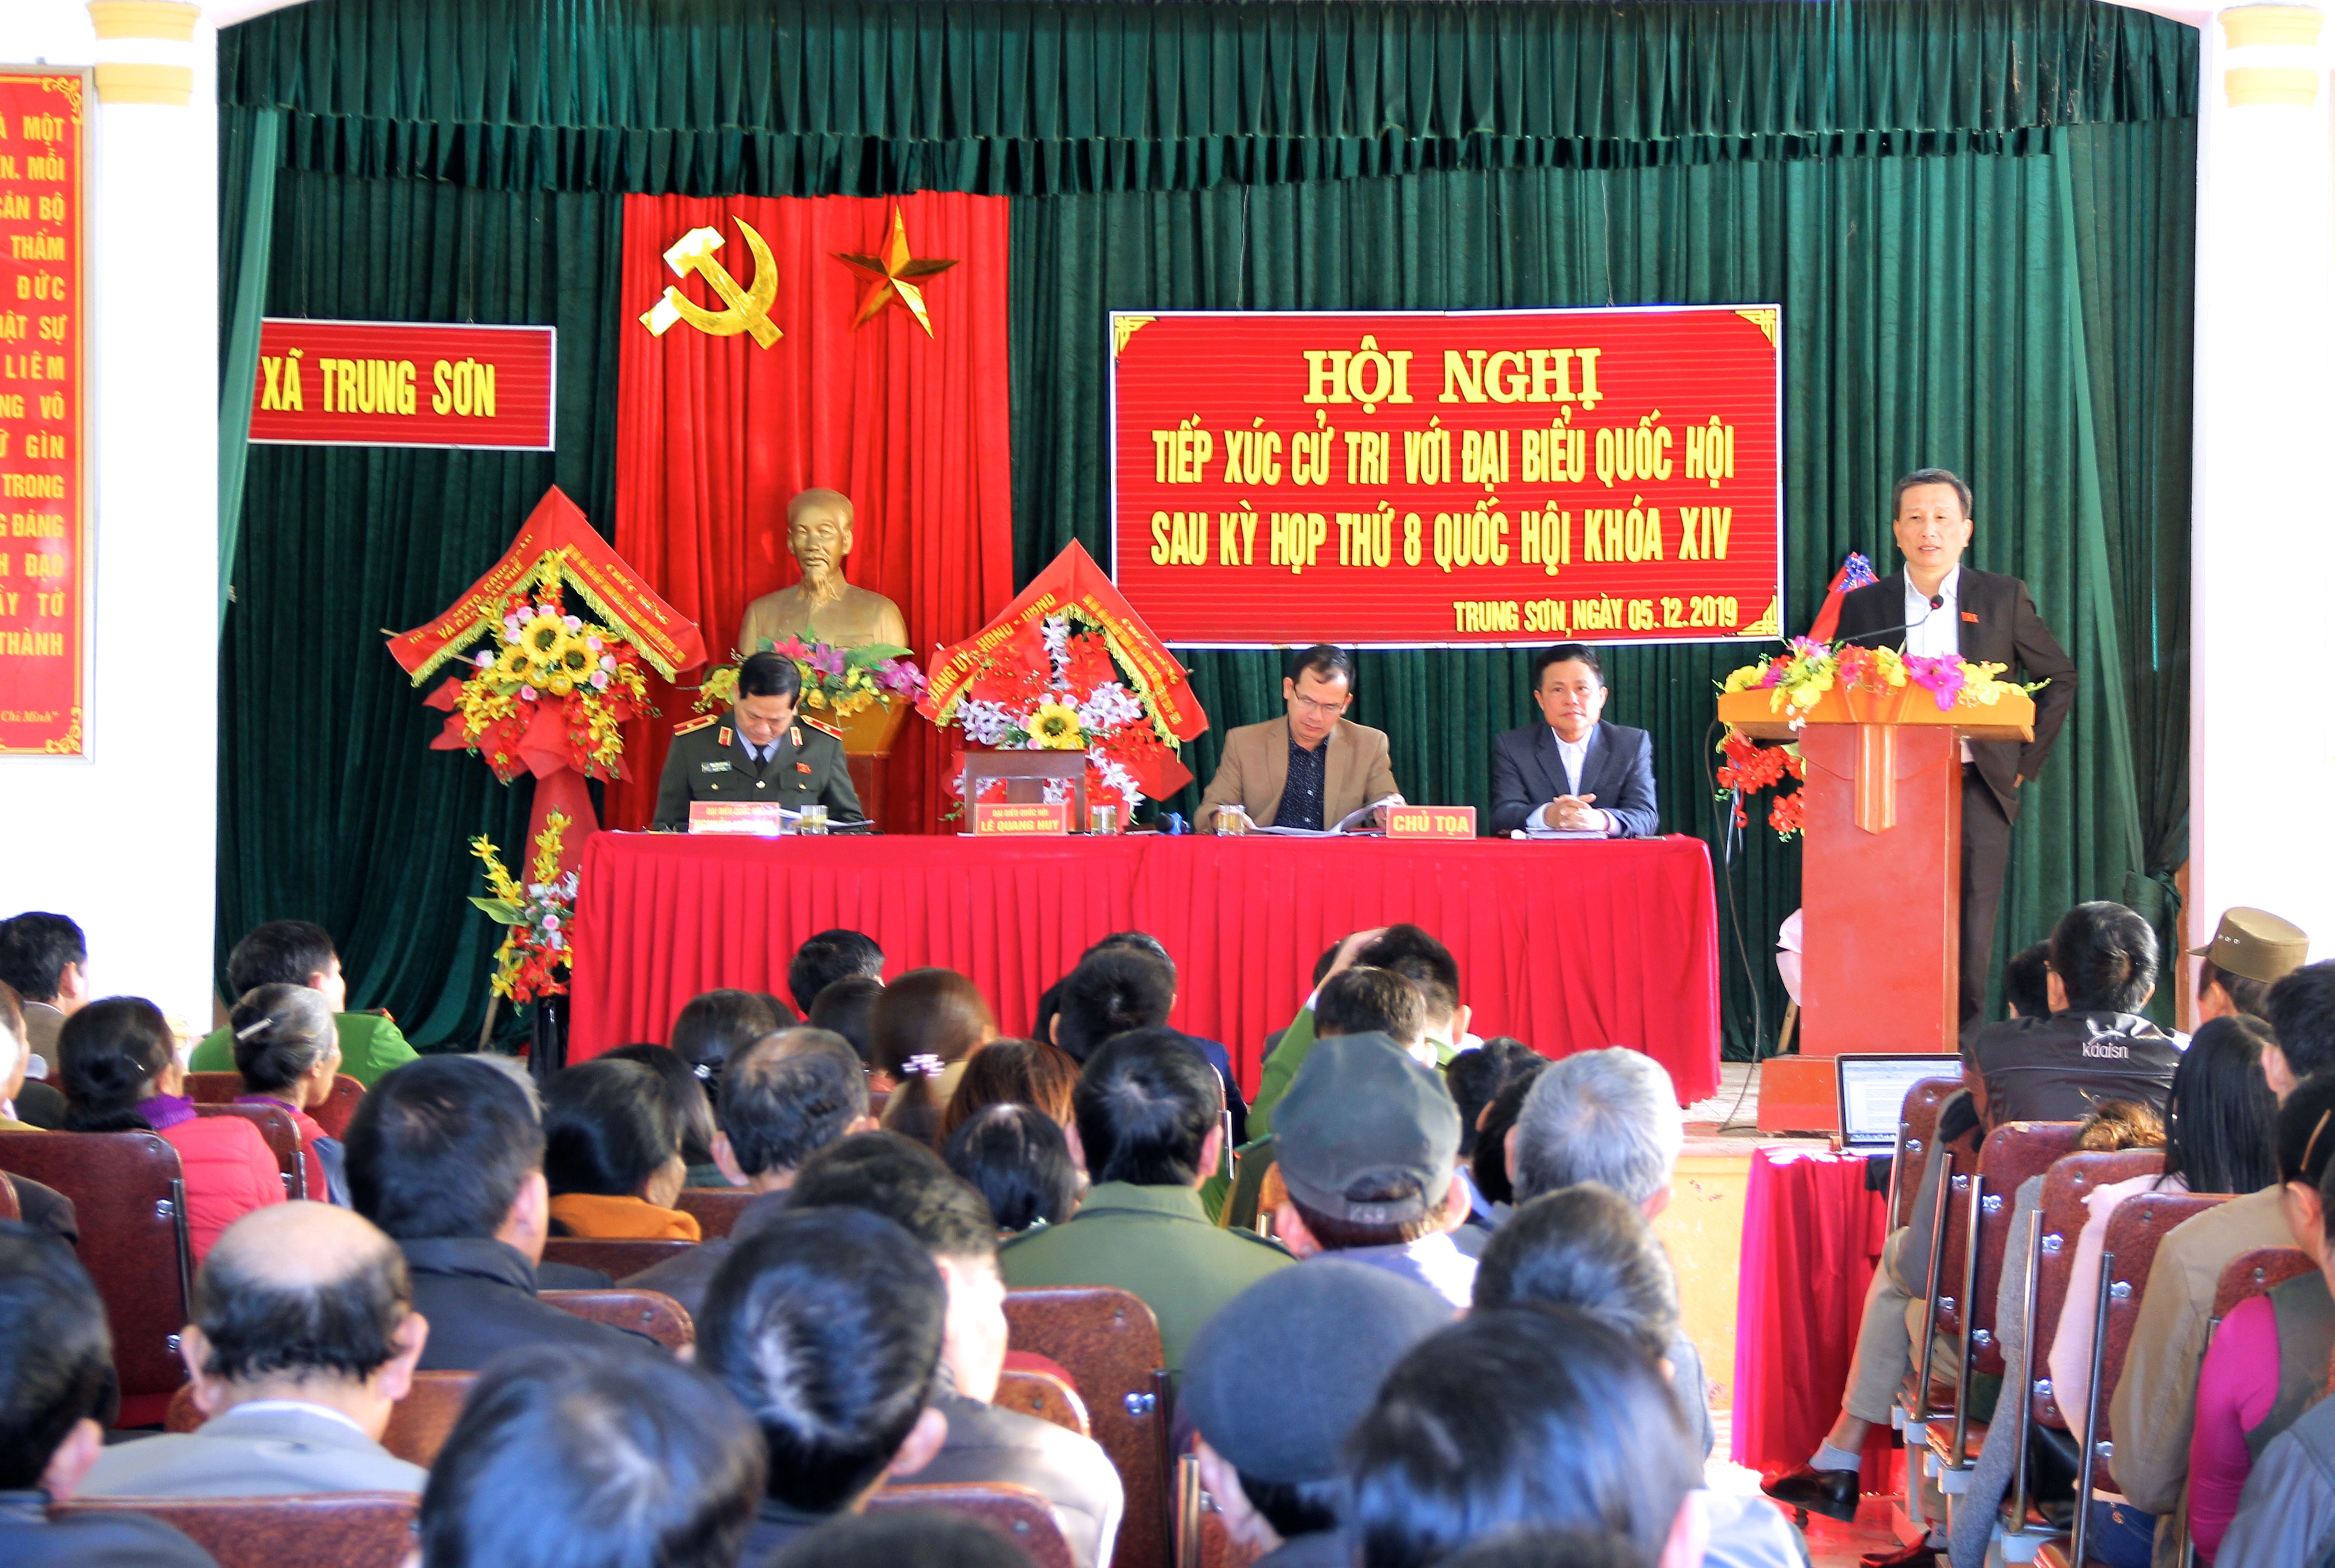 Đại biểu Lê Quang Huy thông tin đến cử tri nội dung của kỳ họp thứ 8, Quốc hội khóa XIV, cũng như hoạt động của đoàn ĐBQH Nghệ An tại kỳ họp. Ảnh: Mỹ Nga